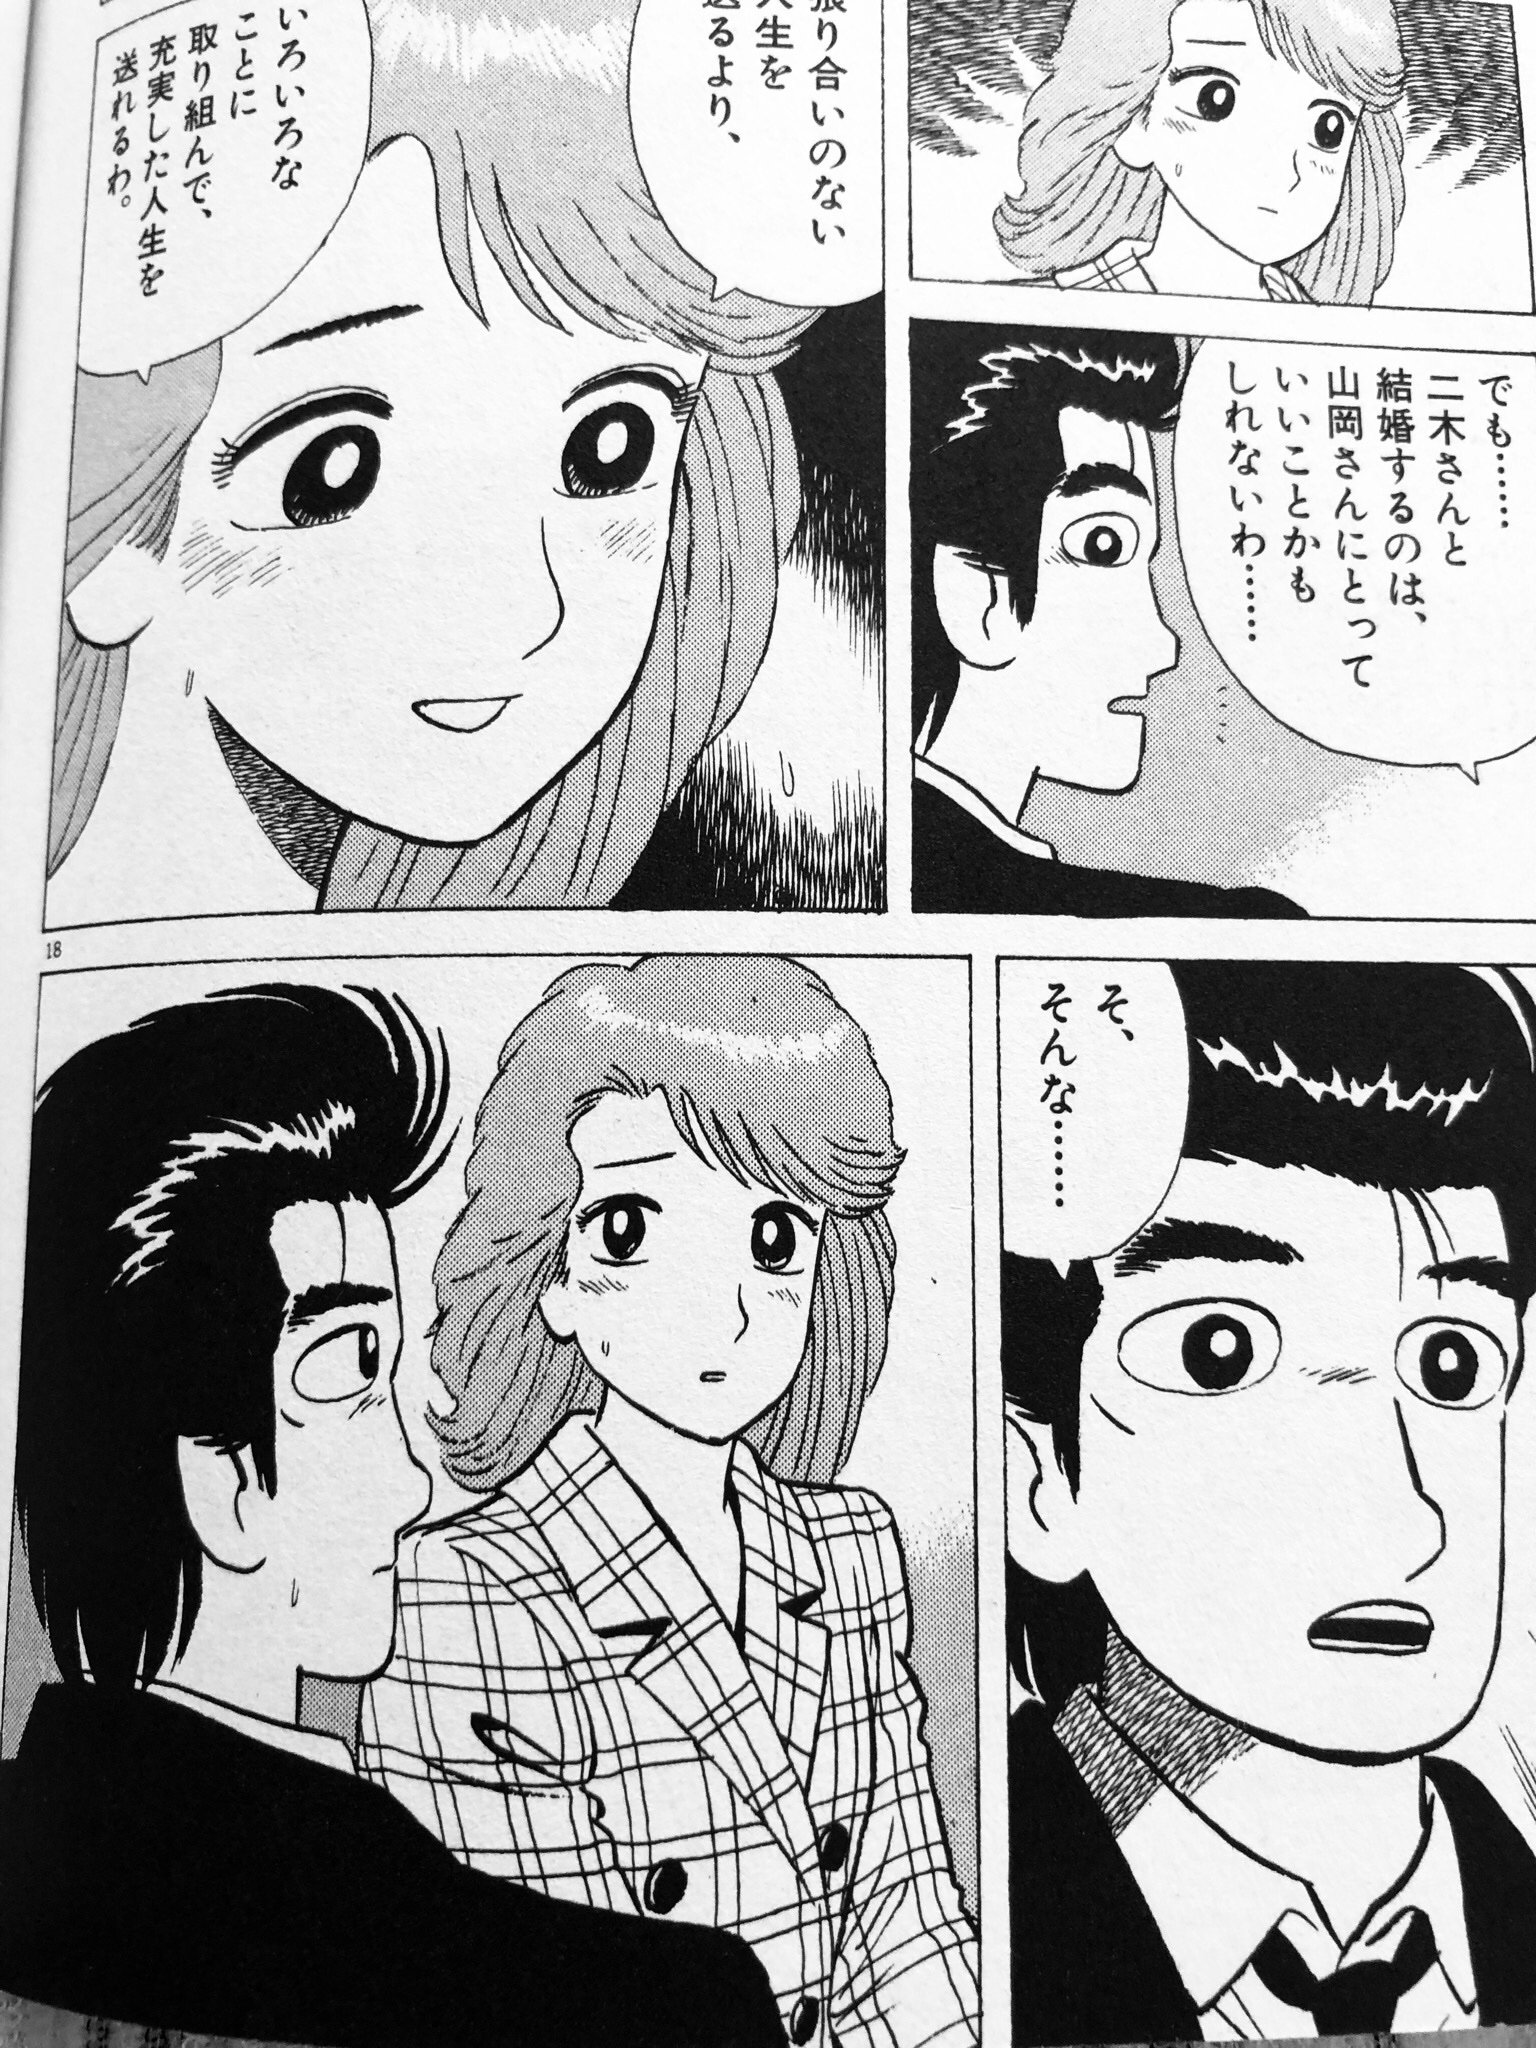 Twitter 上的 Shimako アニメ版美味しんぼ いわしの心 ではこちらのコマはカット ゆう子に電車内で 二木さんと結婚するのは山岡さんにとっていいことかも とモノローグで語らせます しかしアニメでも山岡が悩むシーンで まり子の婿 発言を回想しているので